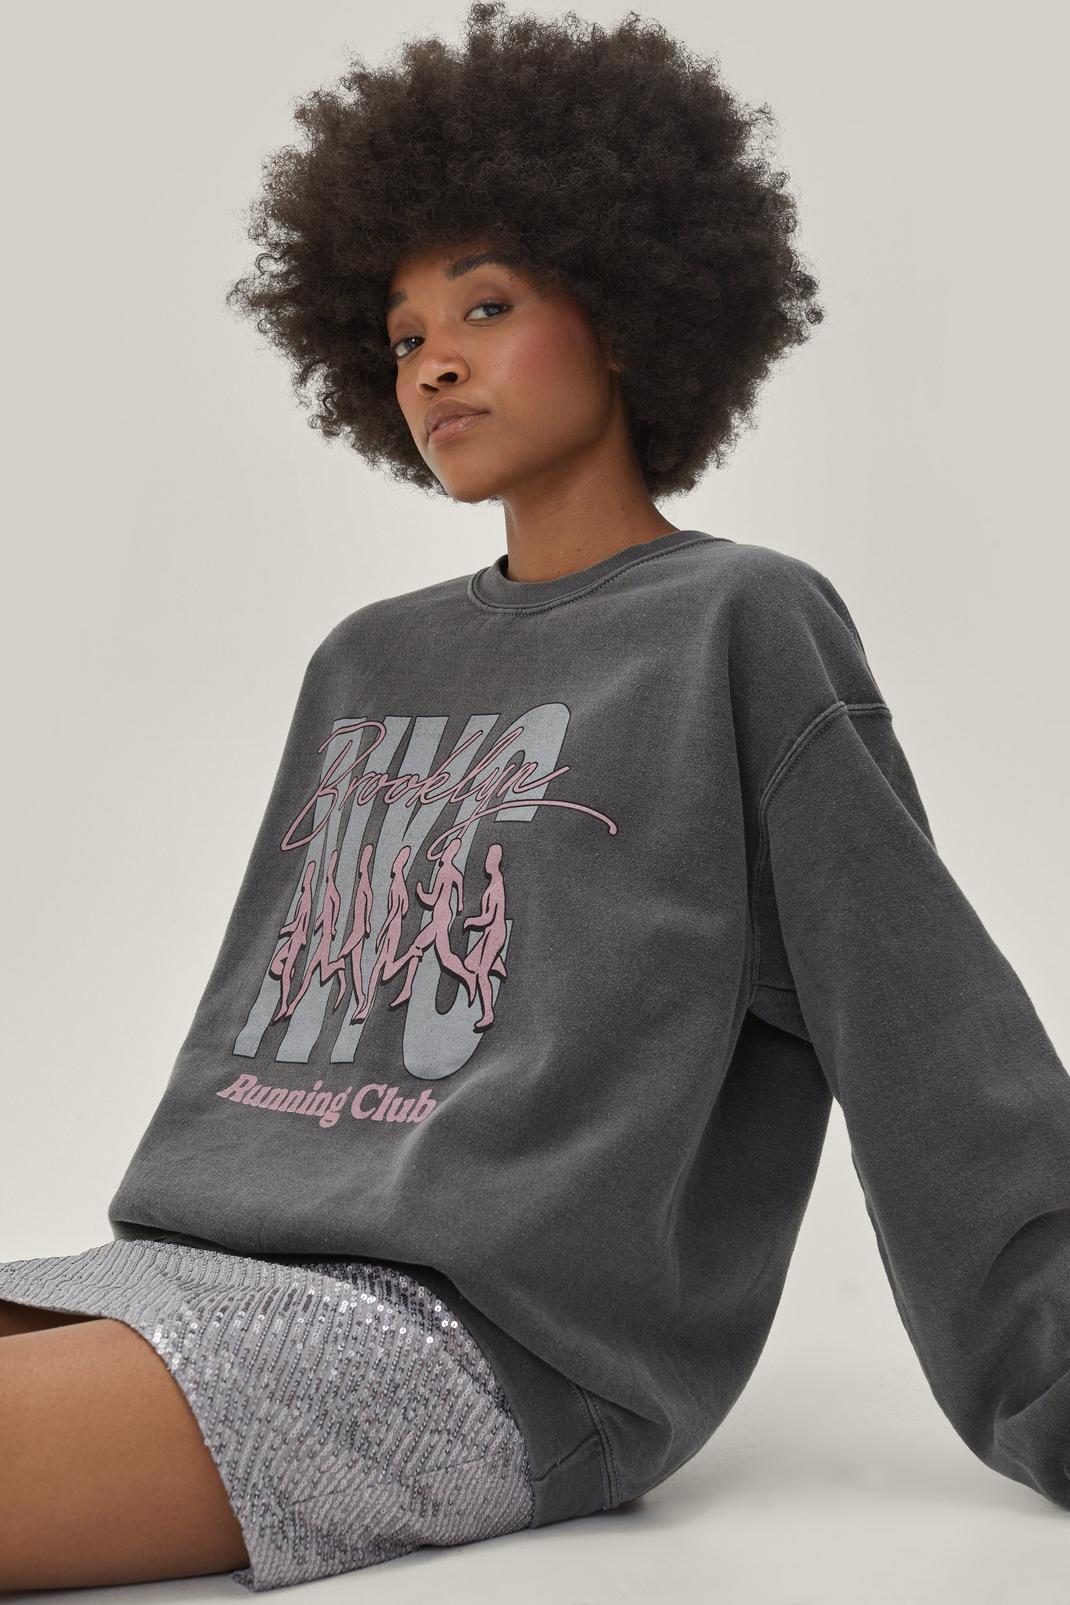 Black Petite New York City Running Club Sweatshirt image number 1